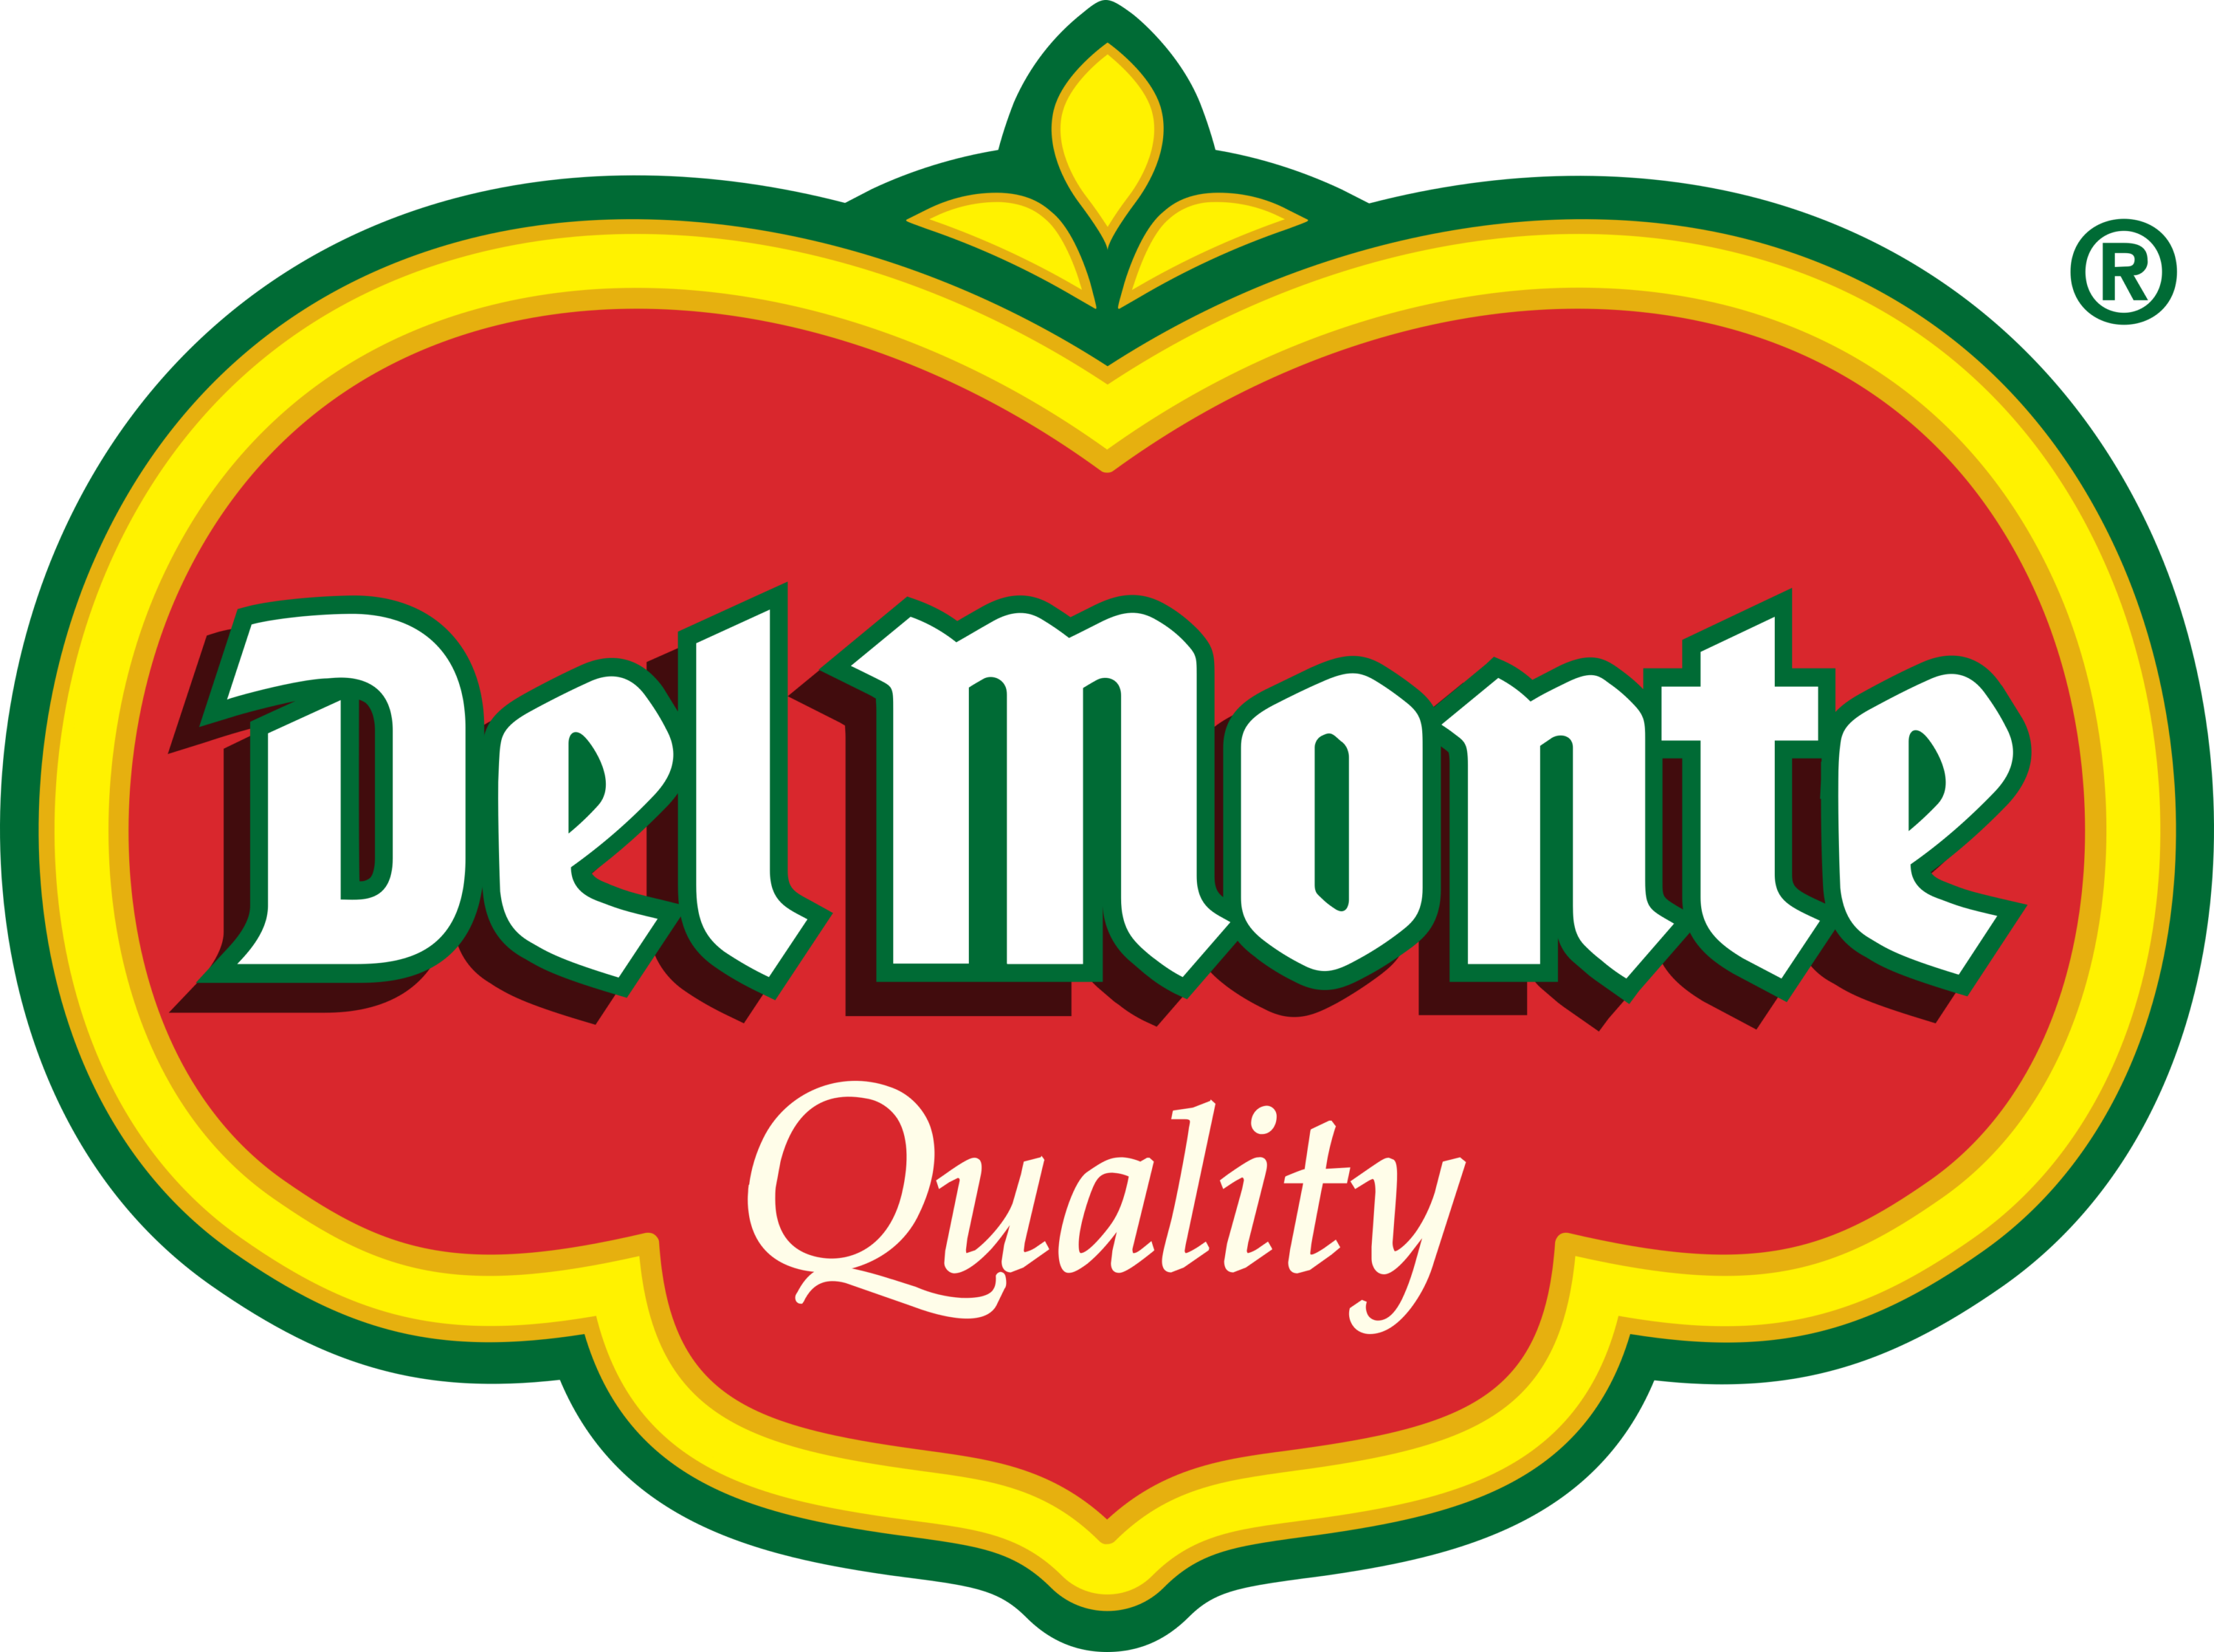 Del Monte Foods Logo